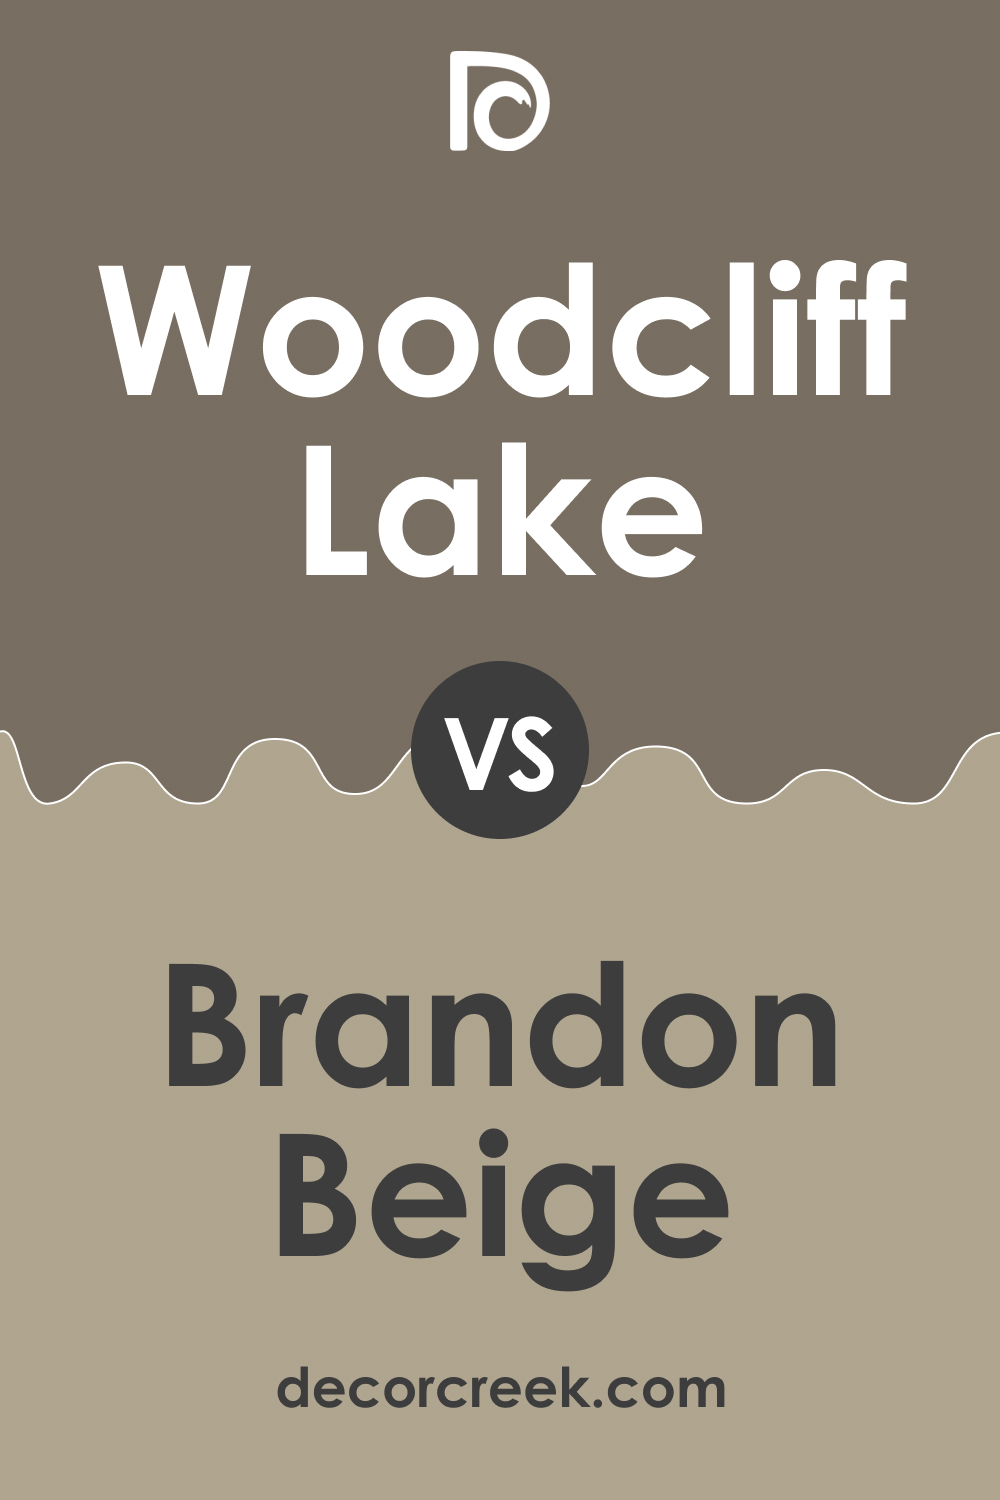 Woodcliff Lake 980 vs. BM 977 Brandon Beige